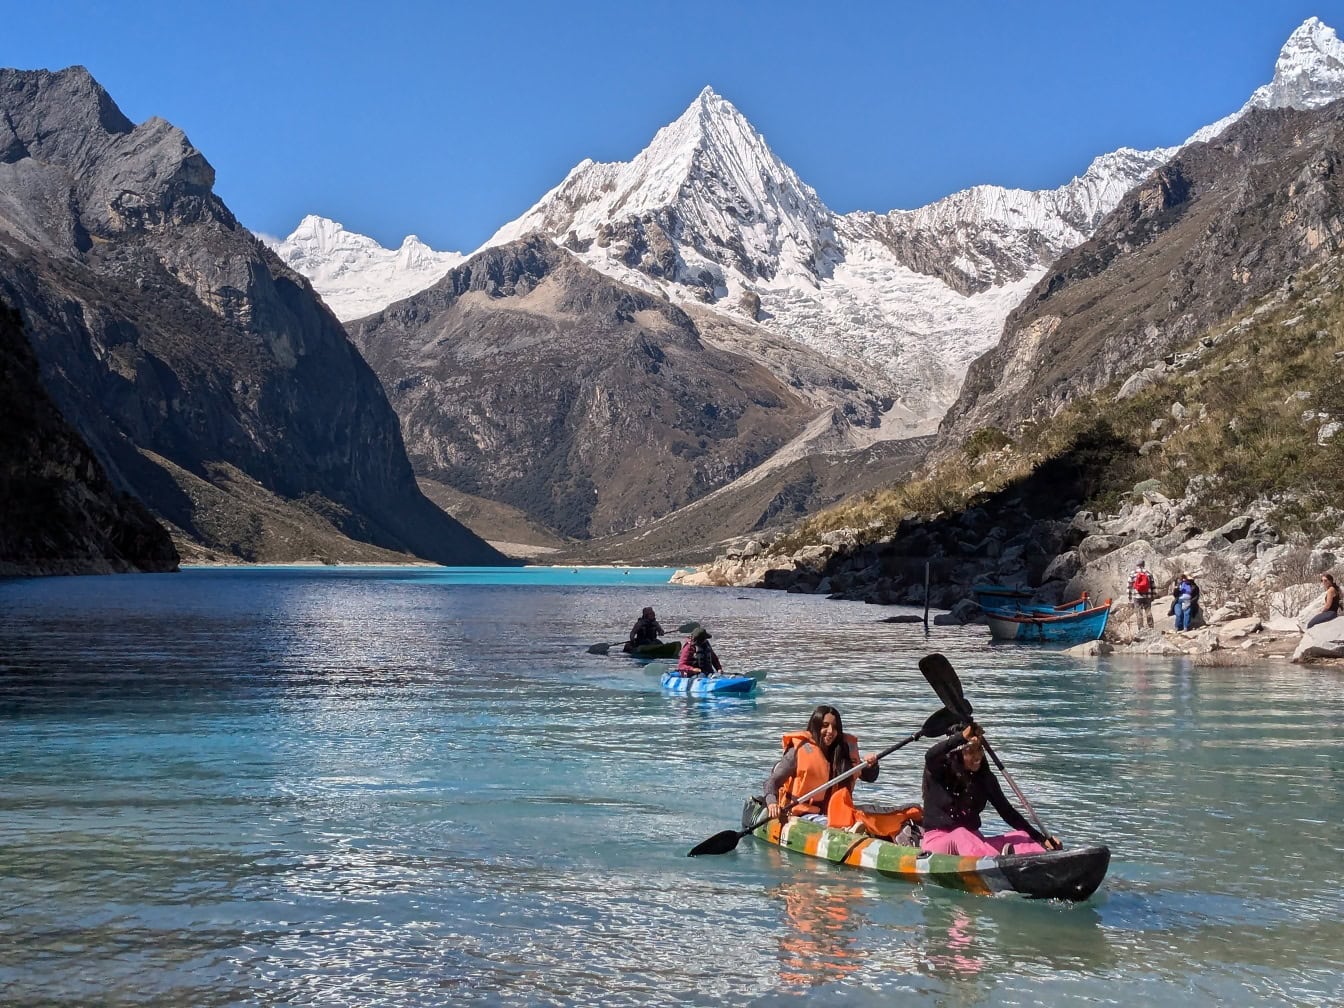 Des personnes en kayak au bord du lac Paron de la Cordillère Blanche dans les Andes péruviennes avec des sommets montagneux en arrière-plan